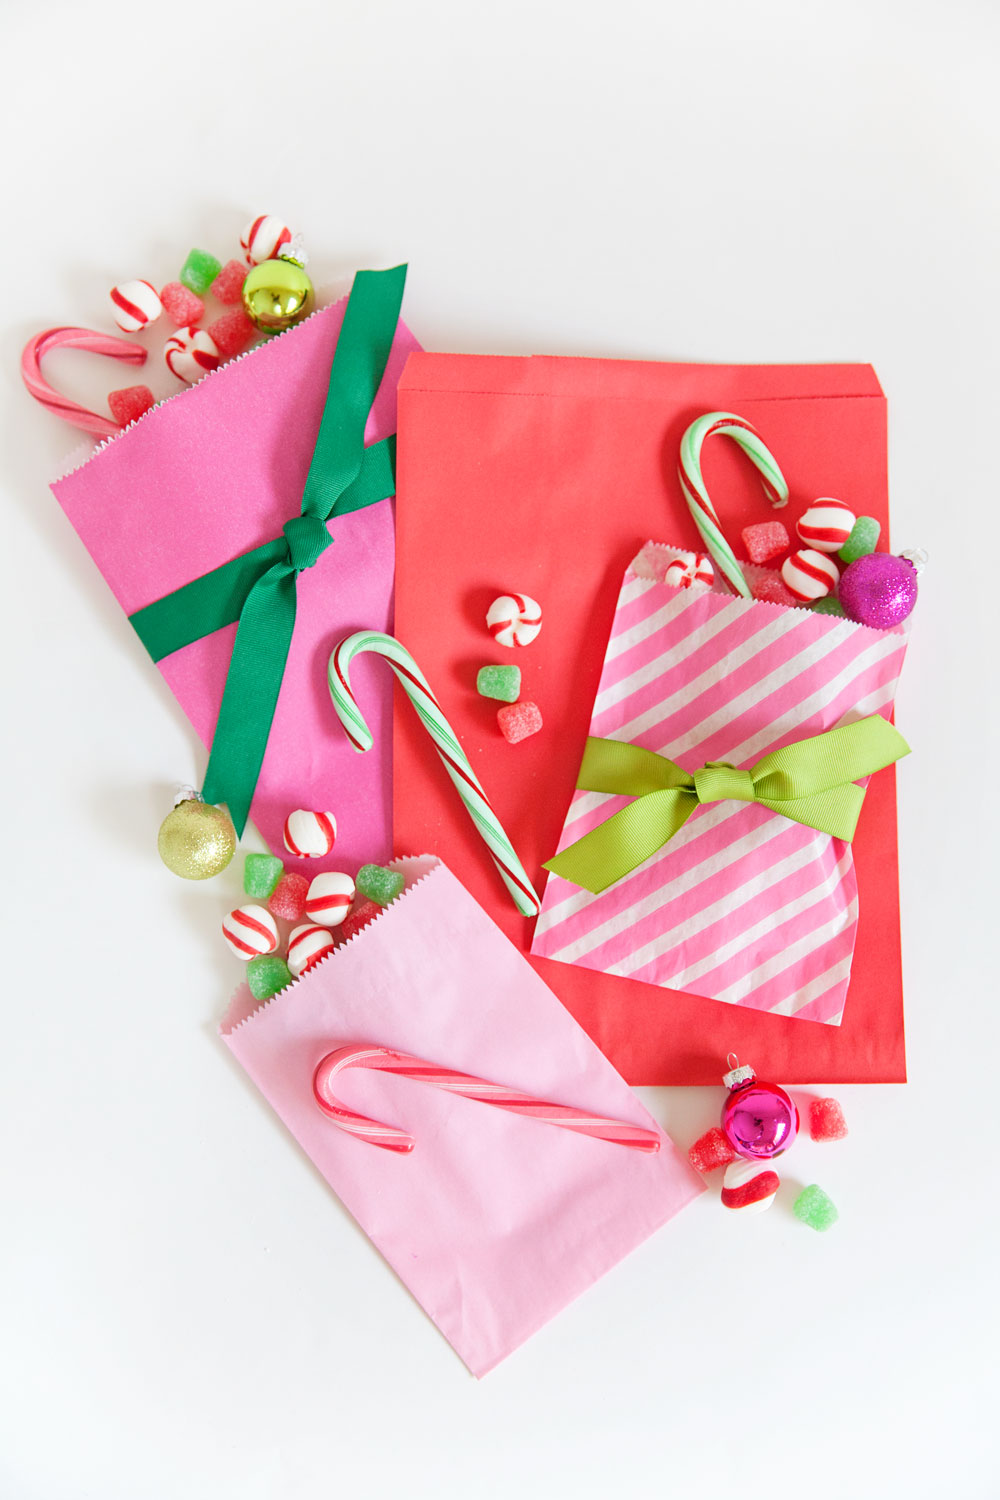 bolsas de papel reutilizadas llenas de caramelos y golosinas, ideas para regalar, fotos de manualidades originales 